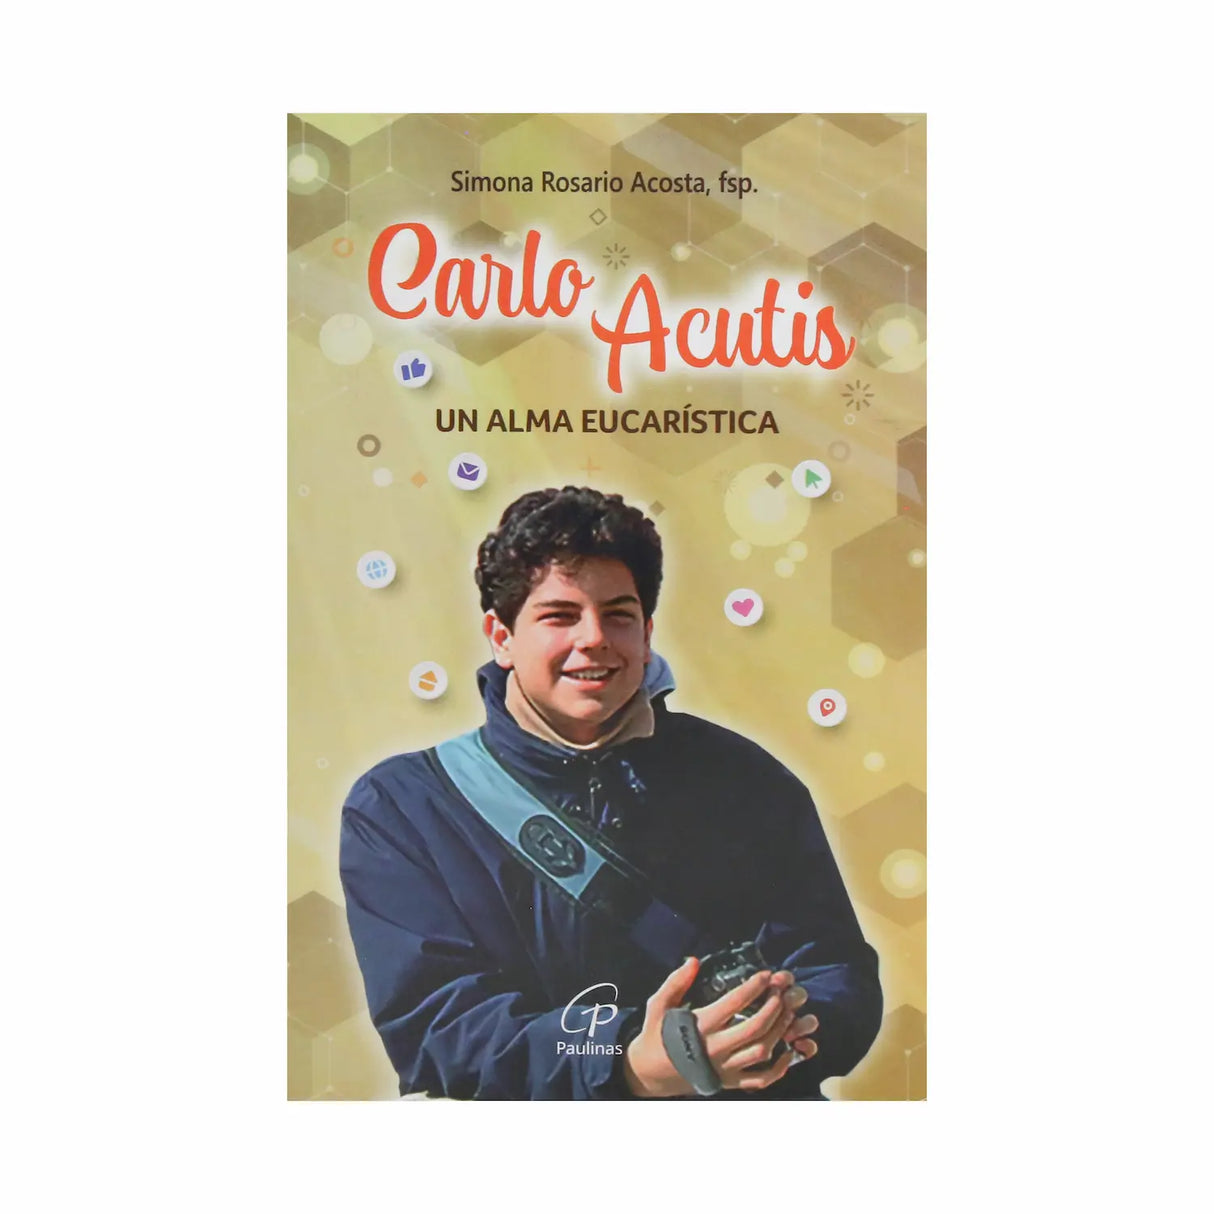 Carlo Acutis - Un alma eucarística